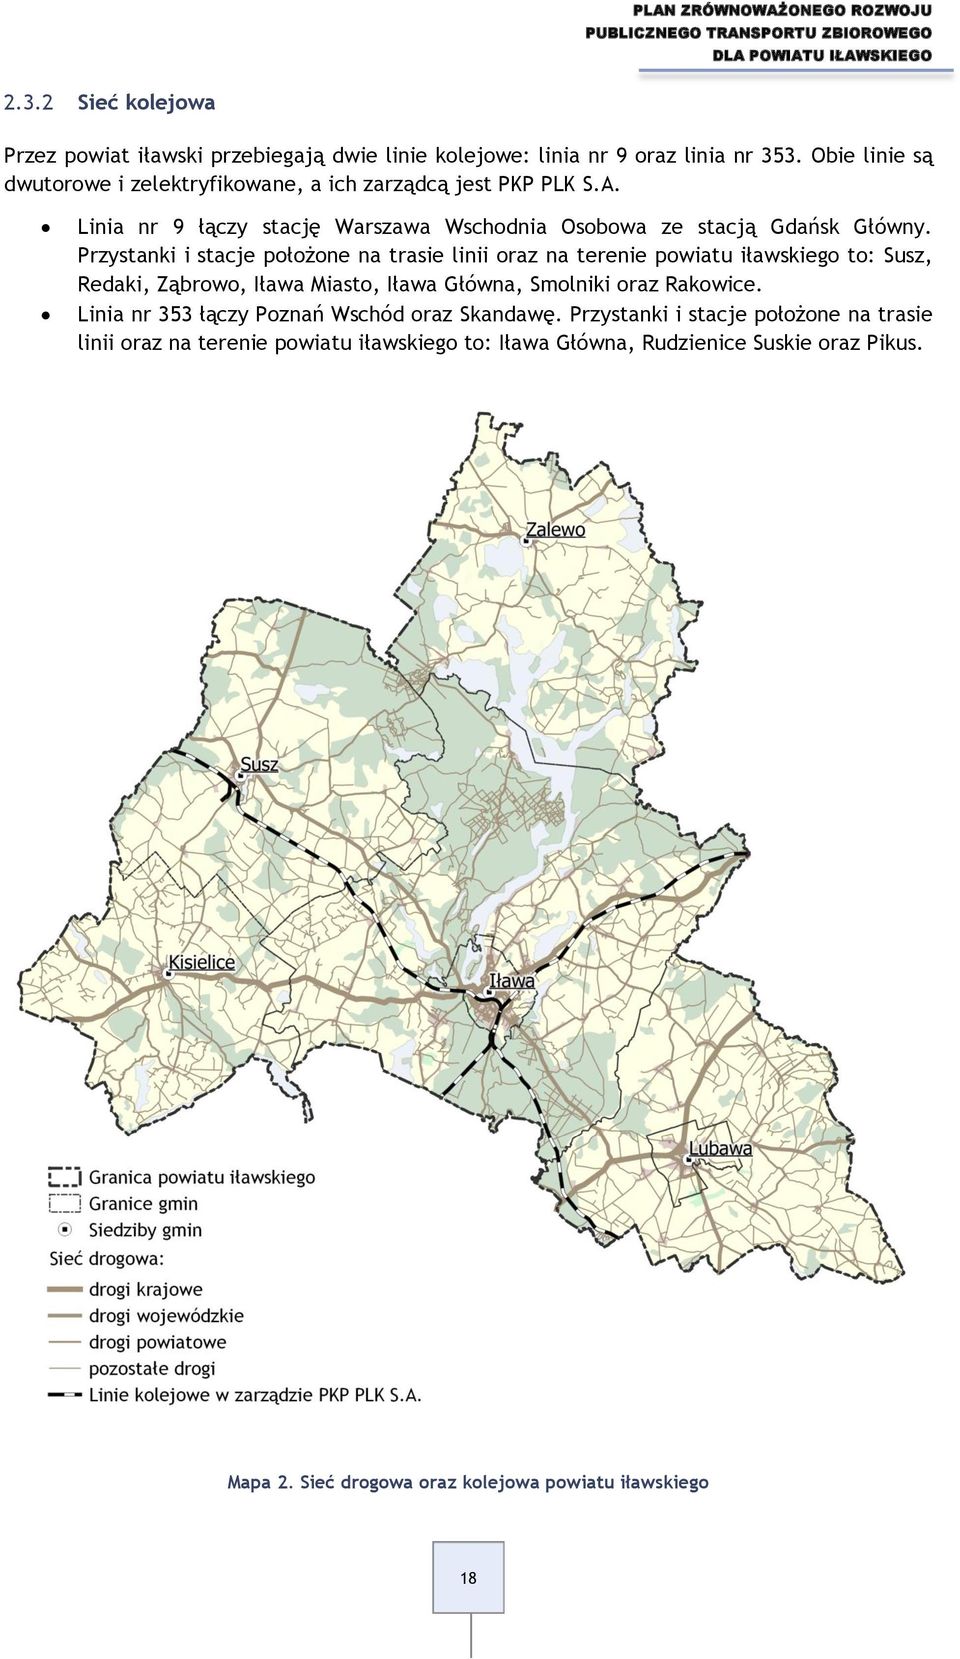 Przystanki i stacje położone na trasie linii oraz na terenie powiatu iławskiego to: Susz, Redaki, Ząbrowo, Iława Miasto, Iława Główna, Smolniki oraz Rakowice.